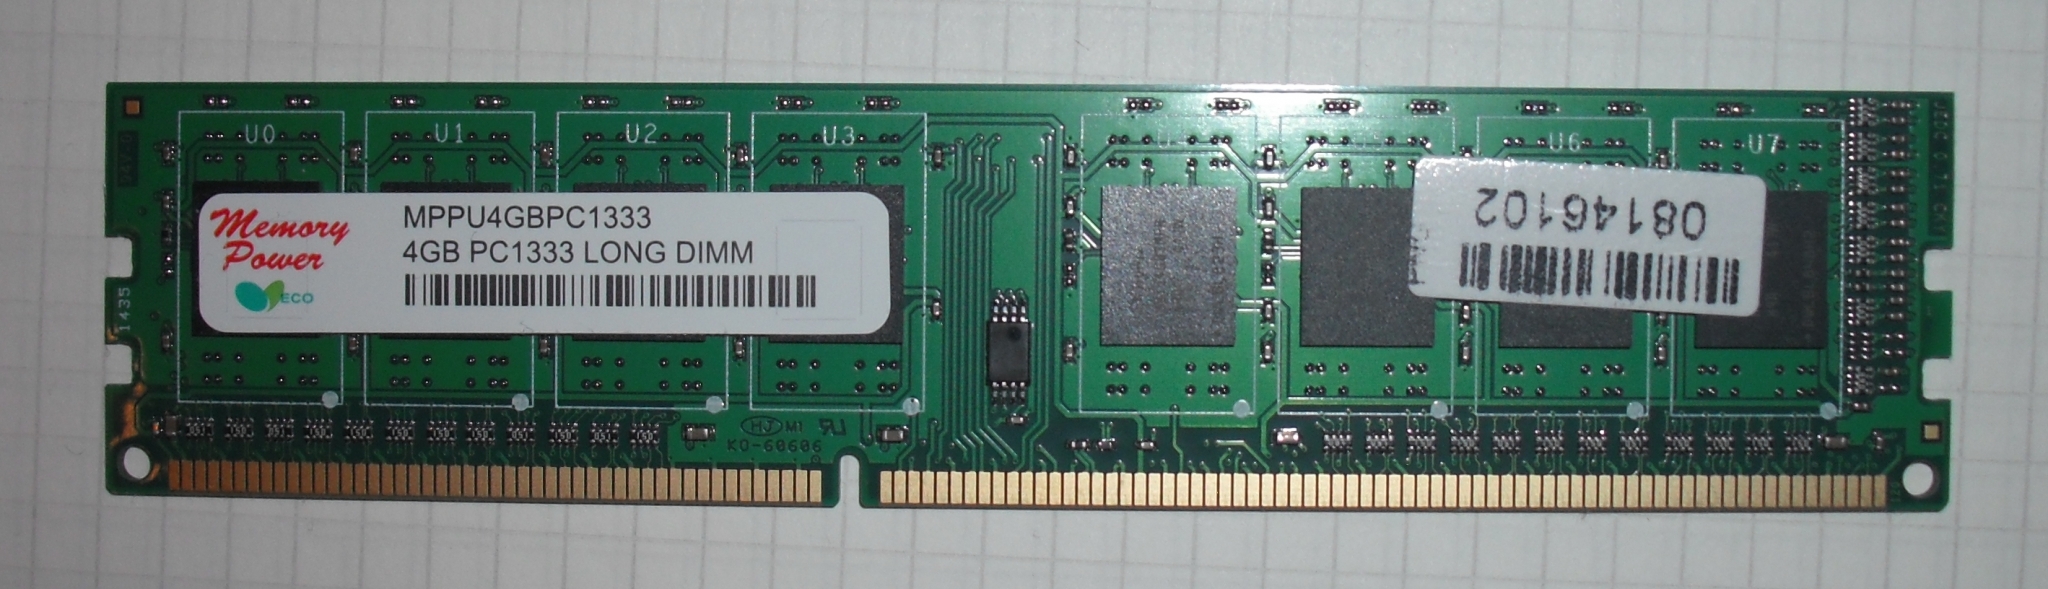 Память hynix ddr3. Оперативная память Memory Power 4gb pc1333. Hynix ddr3 4gb pc1333. Оперативную память Hynix 4 GB ddr3 1333 MHZ. Hynix ddr3 PC 1333 DIMM 4gb.